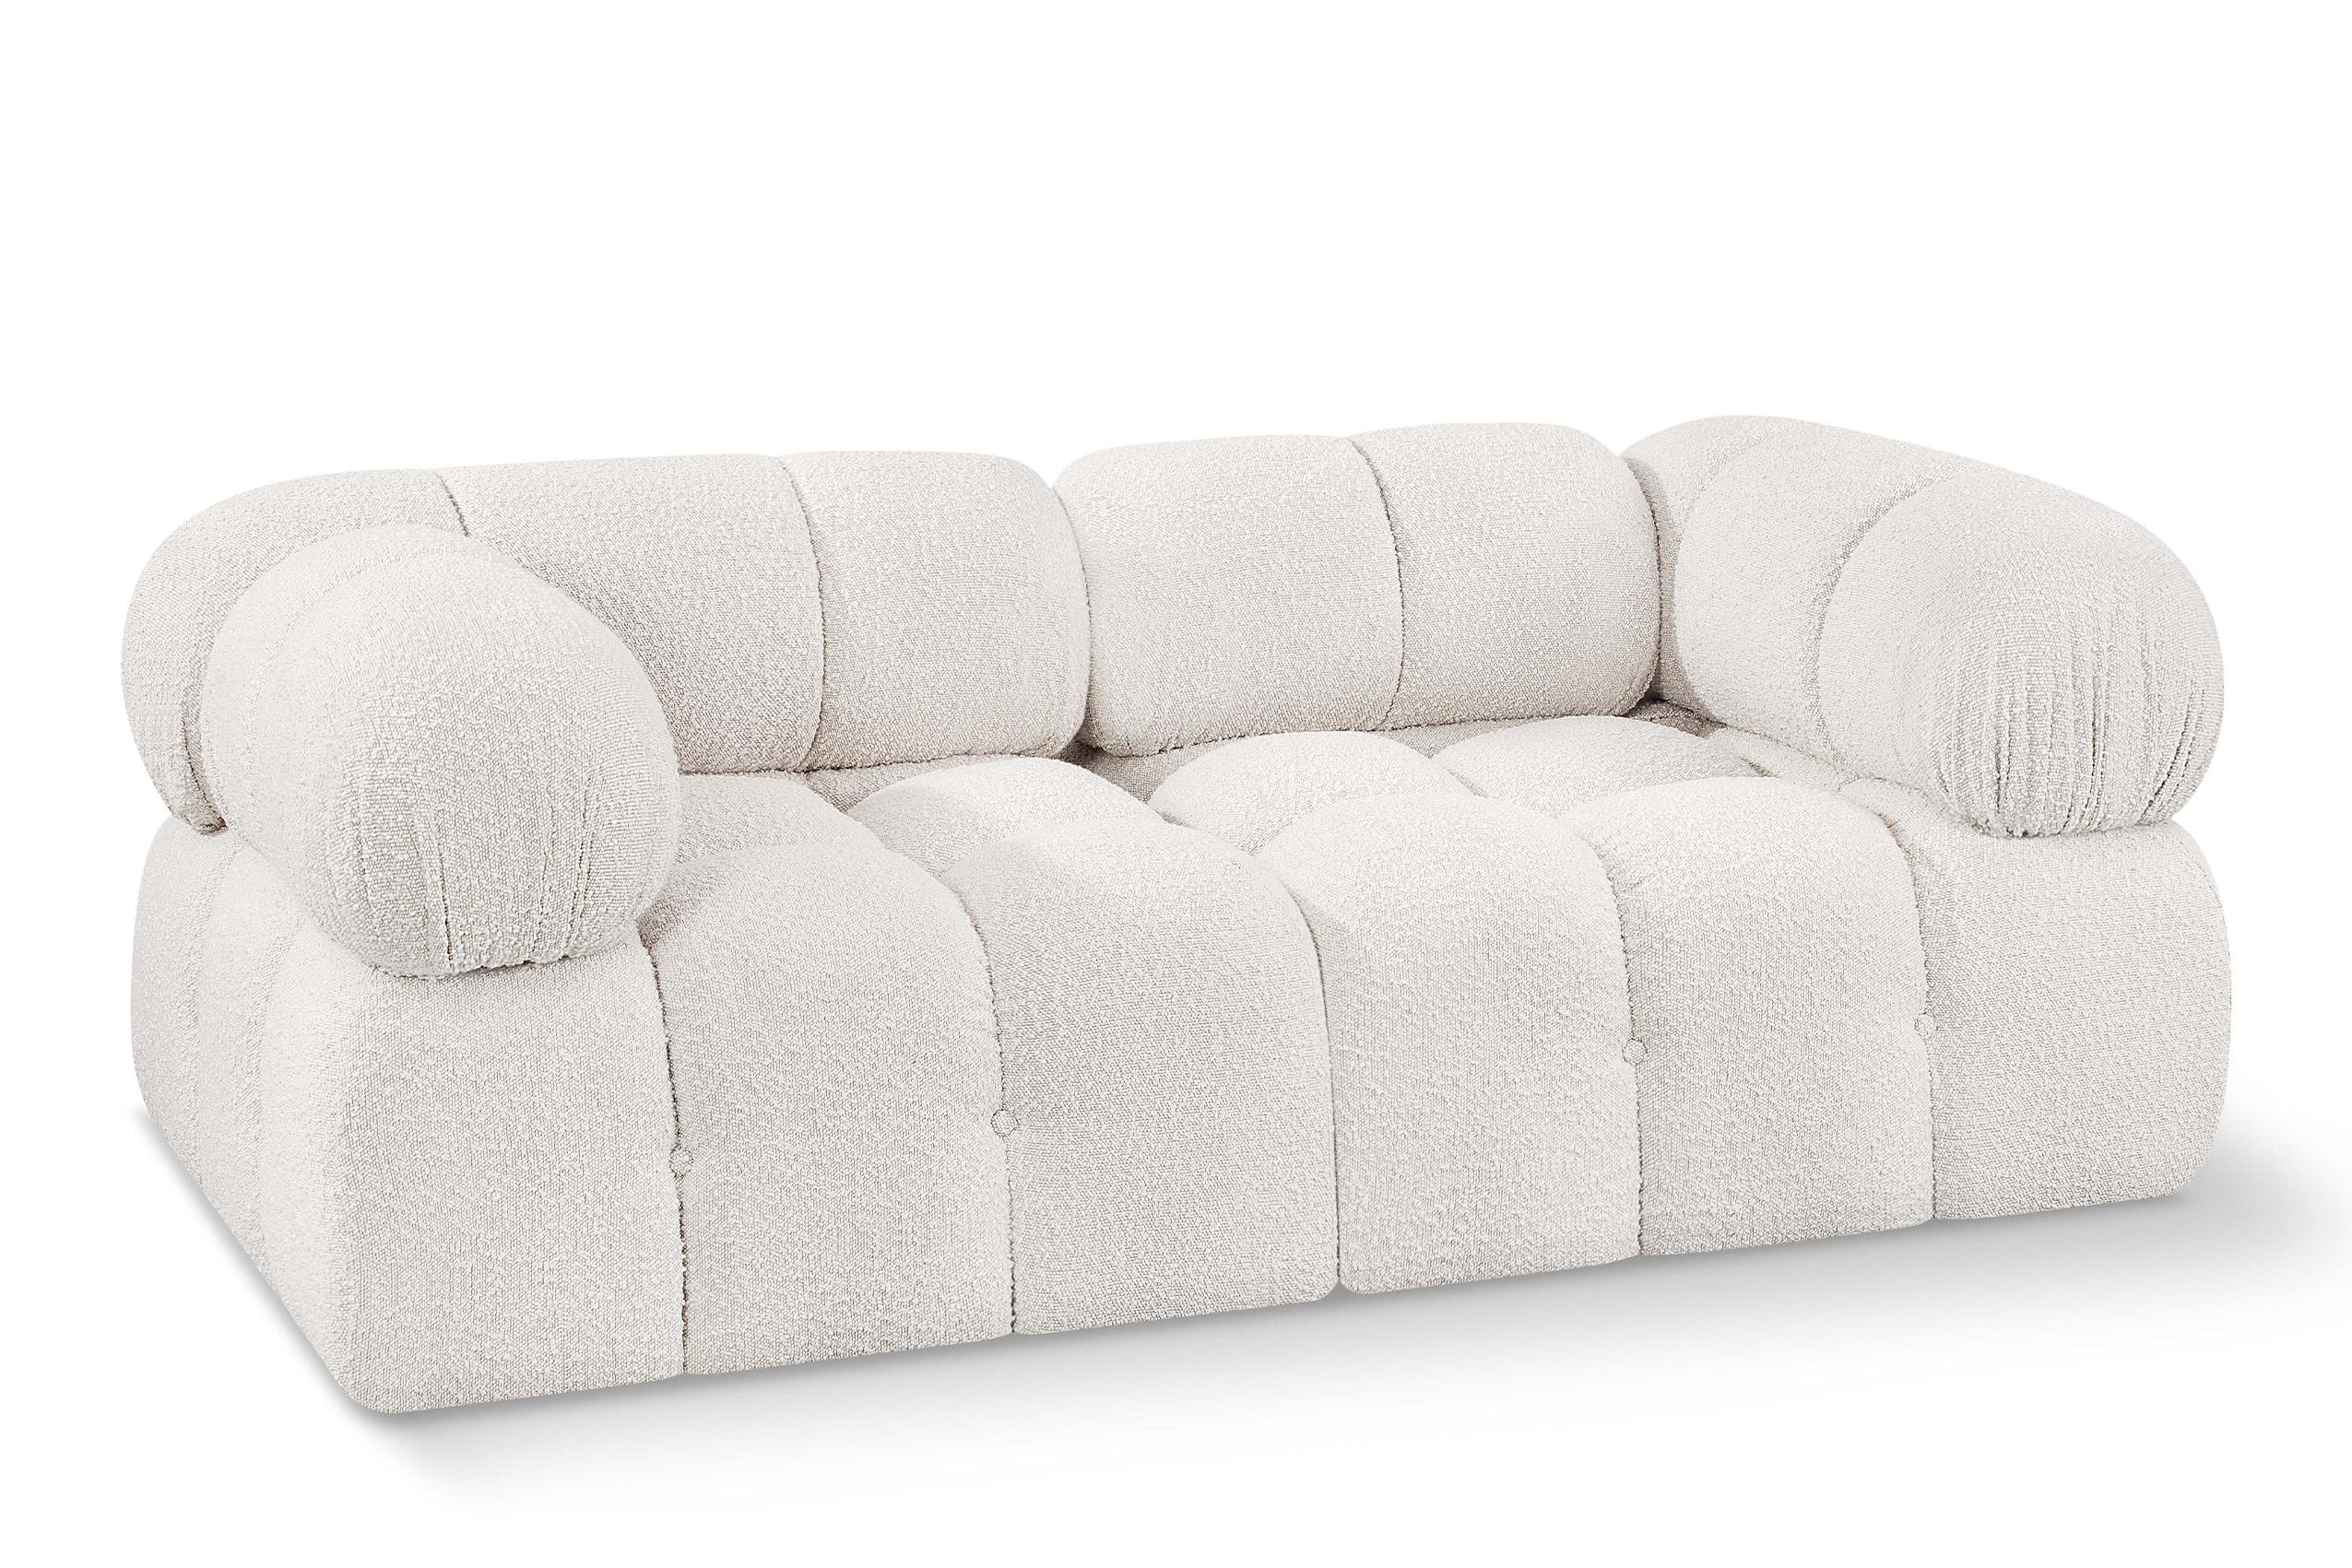 Contemporary, Modern Modular Sofa AMES 611Cream-S68A 611Cream-S68A in Cream 